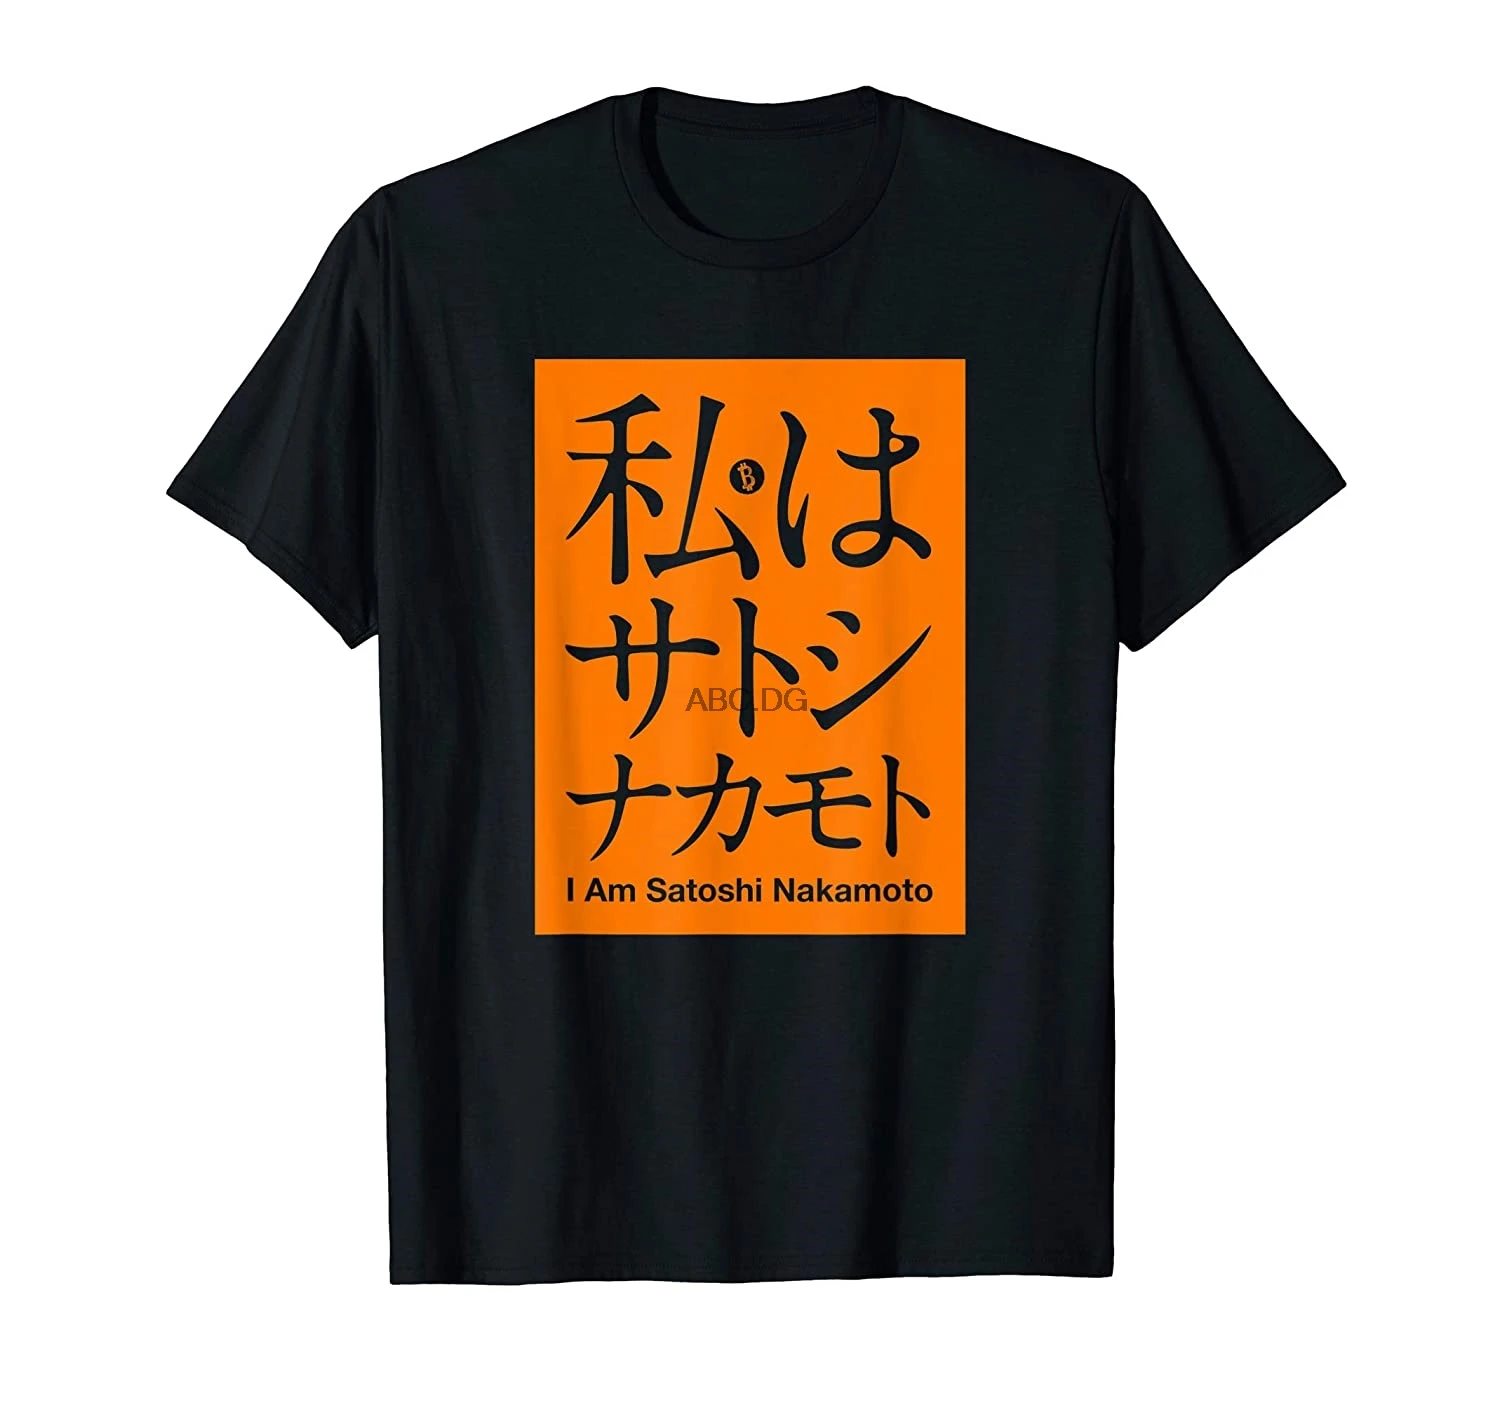 

Футболка I am Satoshi Nakamoto для криптовалюты, оранжевого цвета